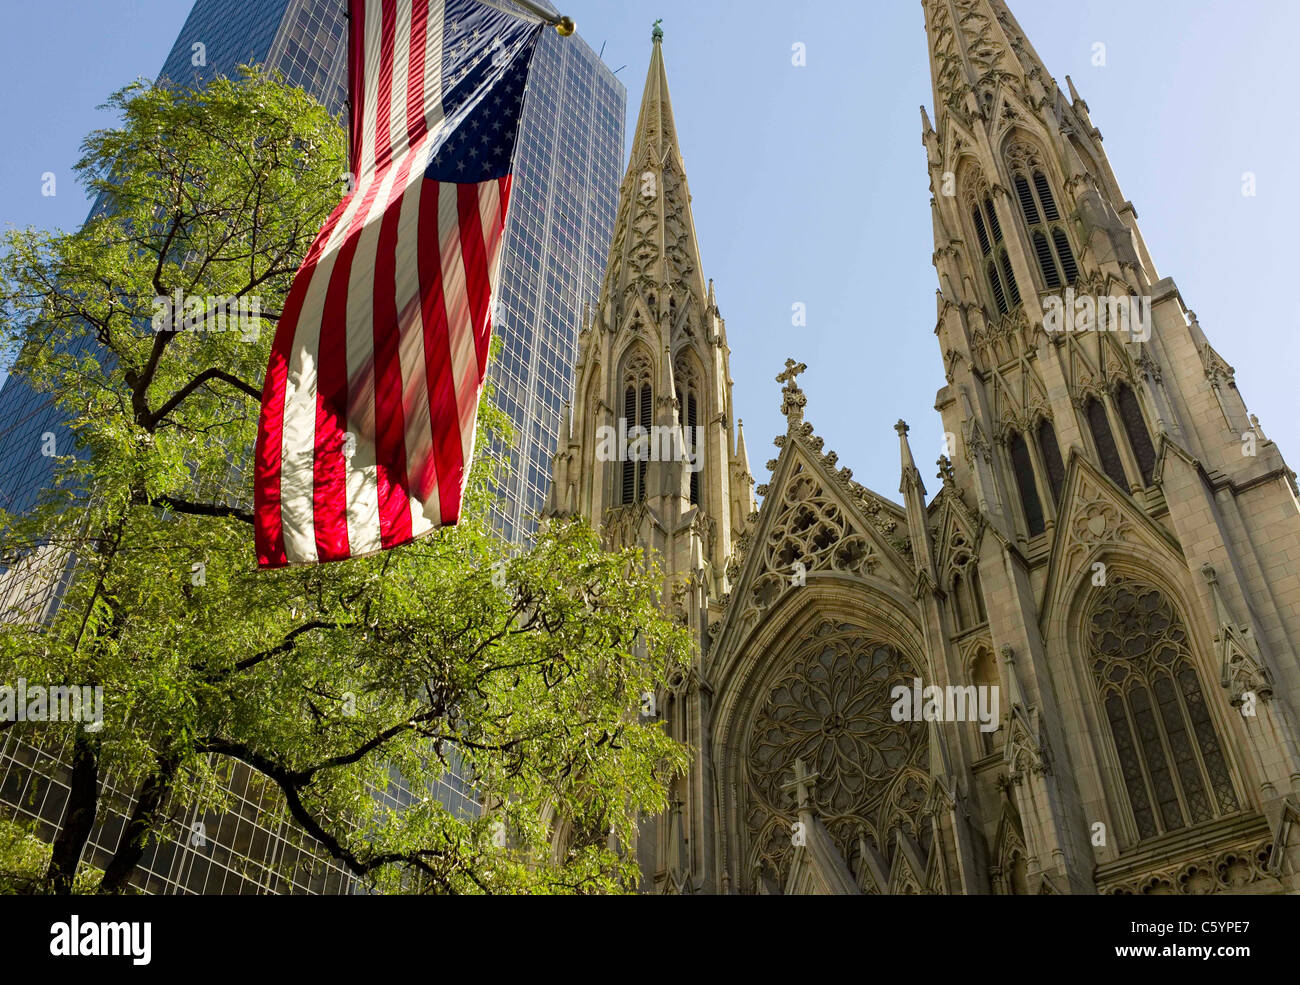 St. Patrick's Cathedral, New York, NY USA Stock Photo